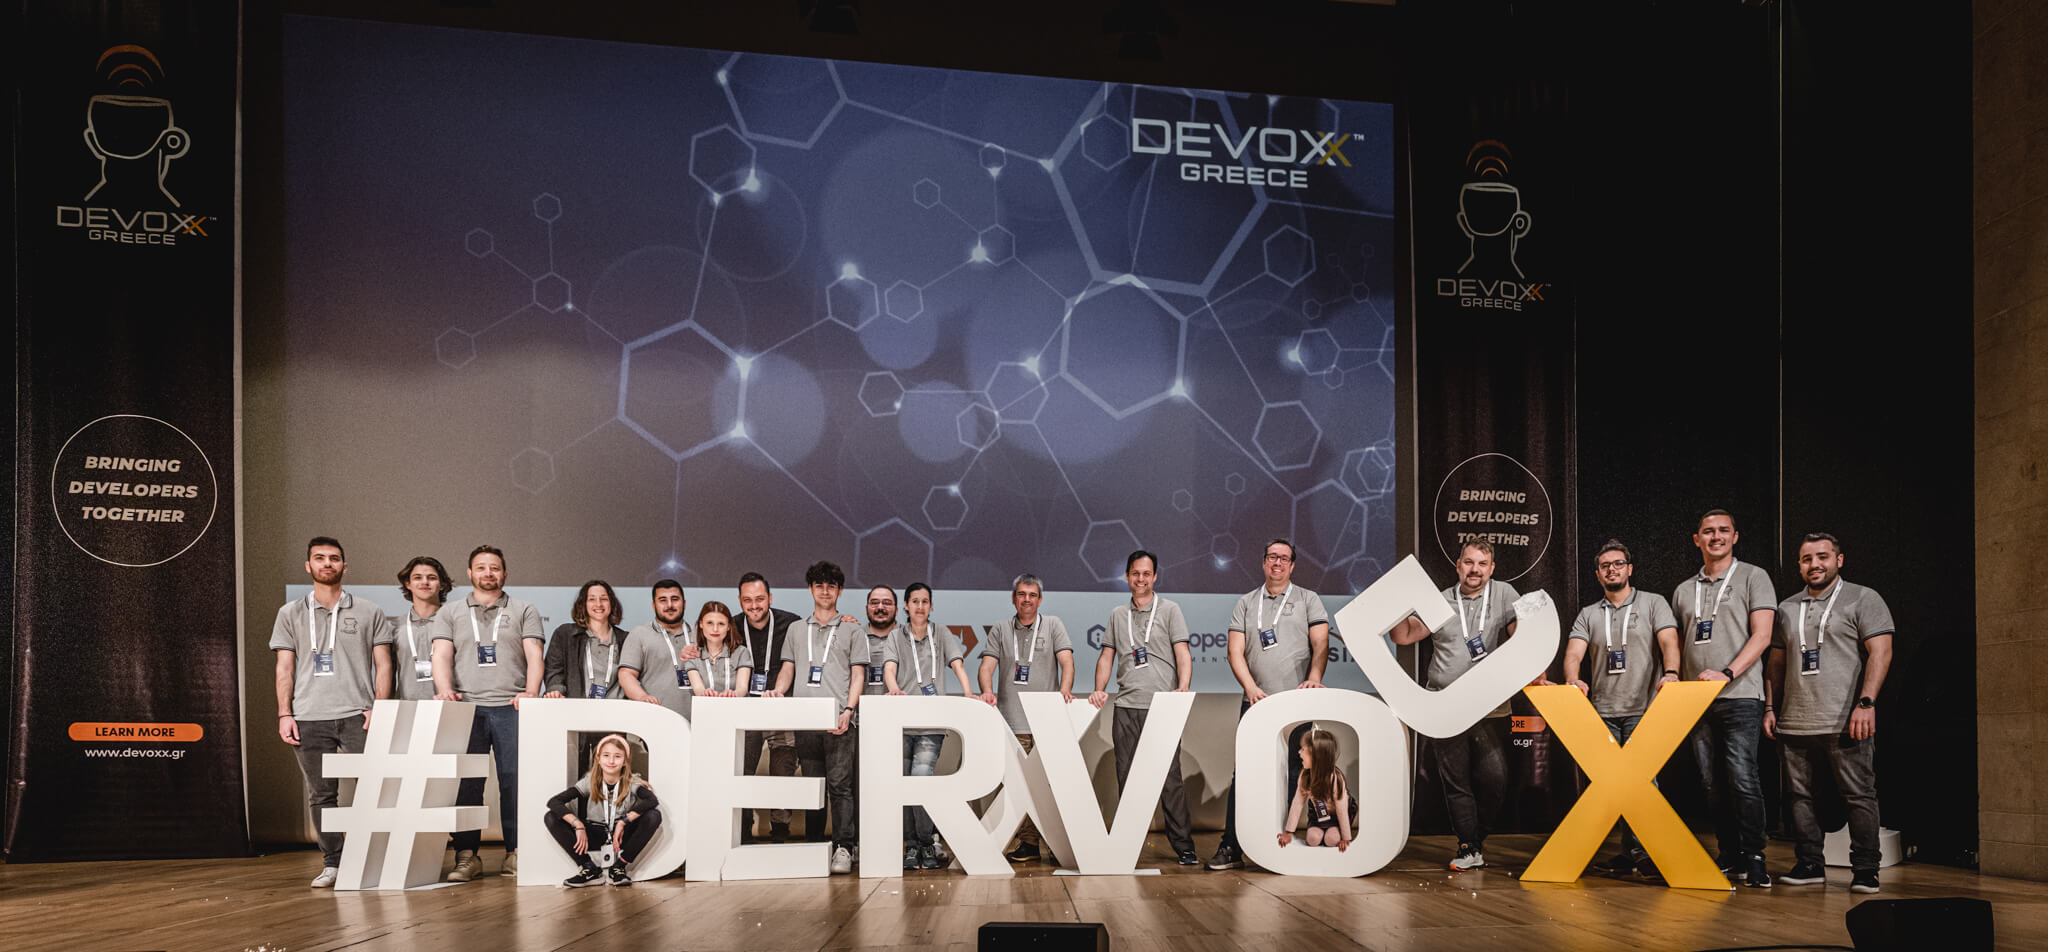 Devoxx Greece